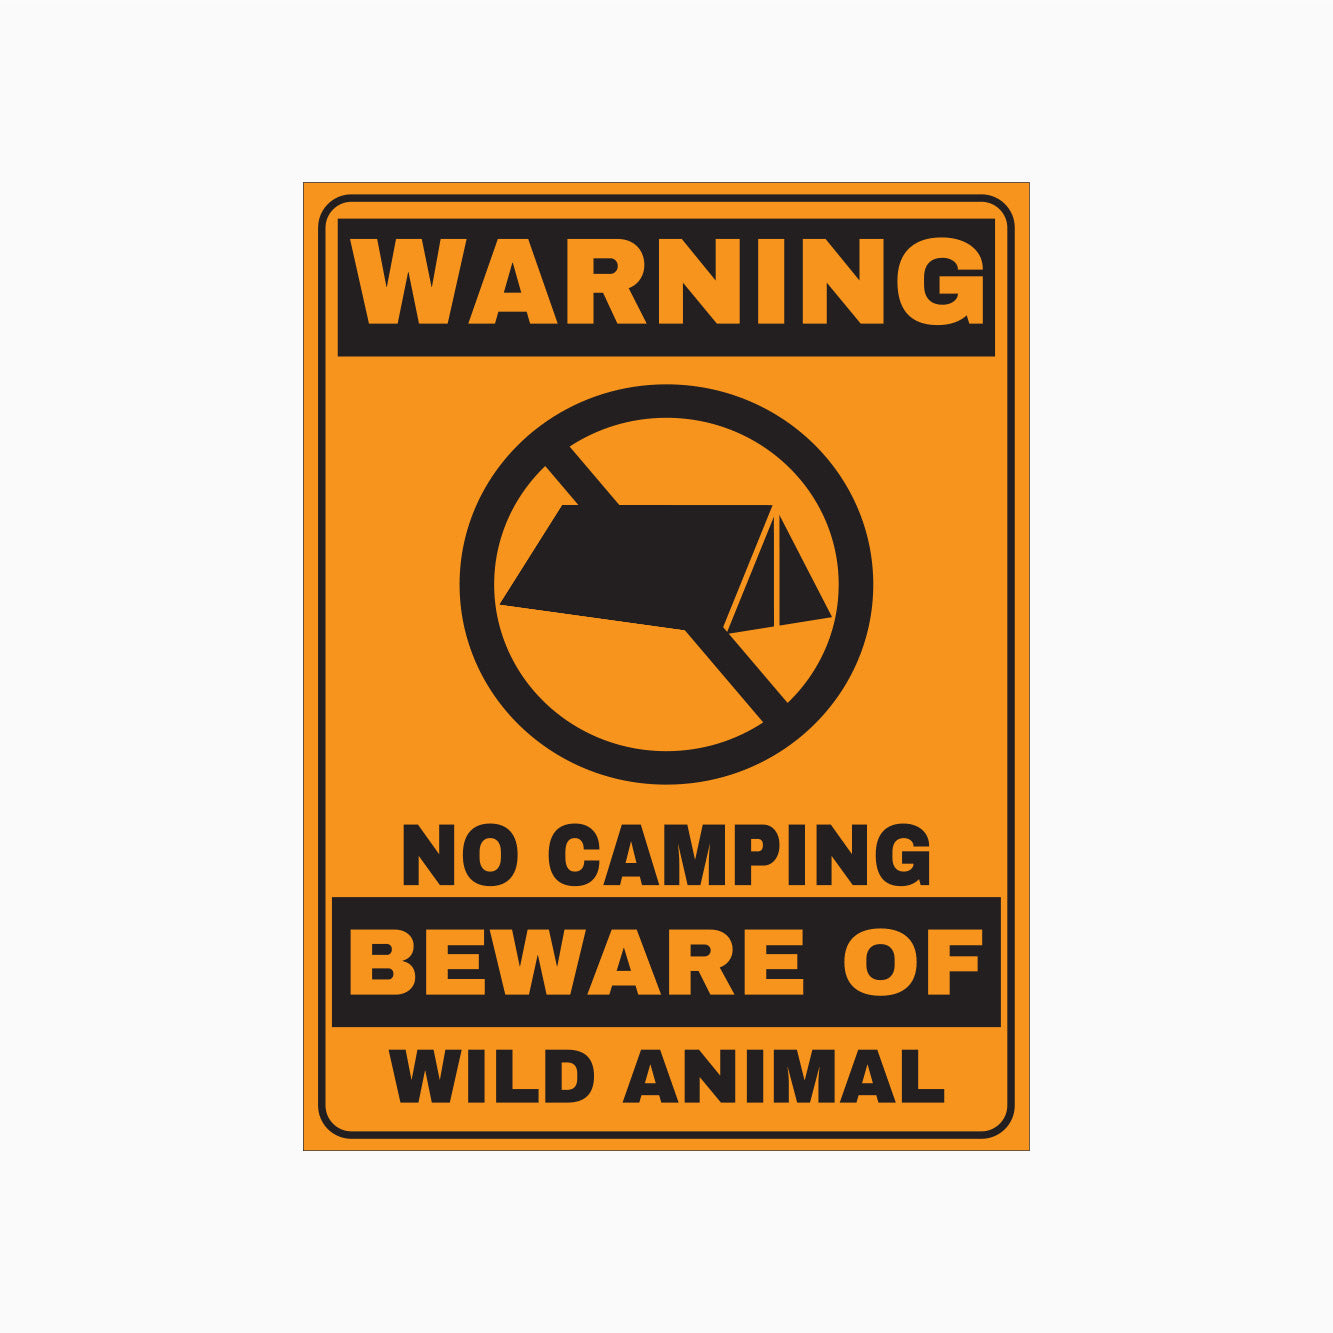 WARNING SIGN - NO CAMPING BEWARE OF WILD ANIMAL SIGN